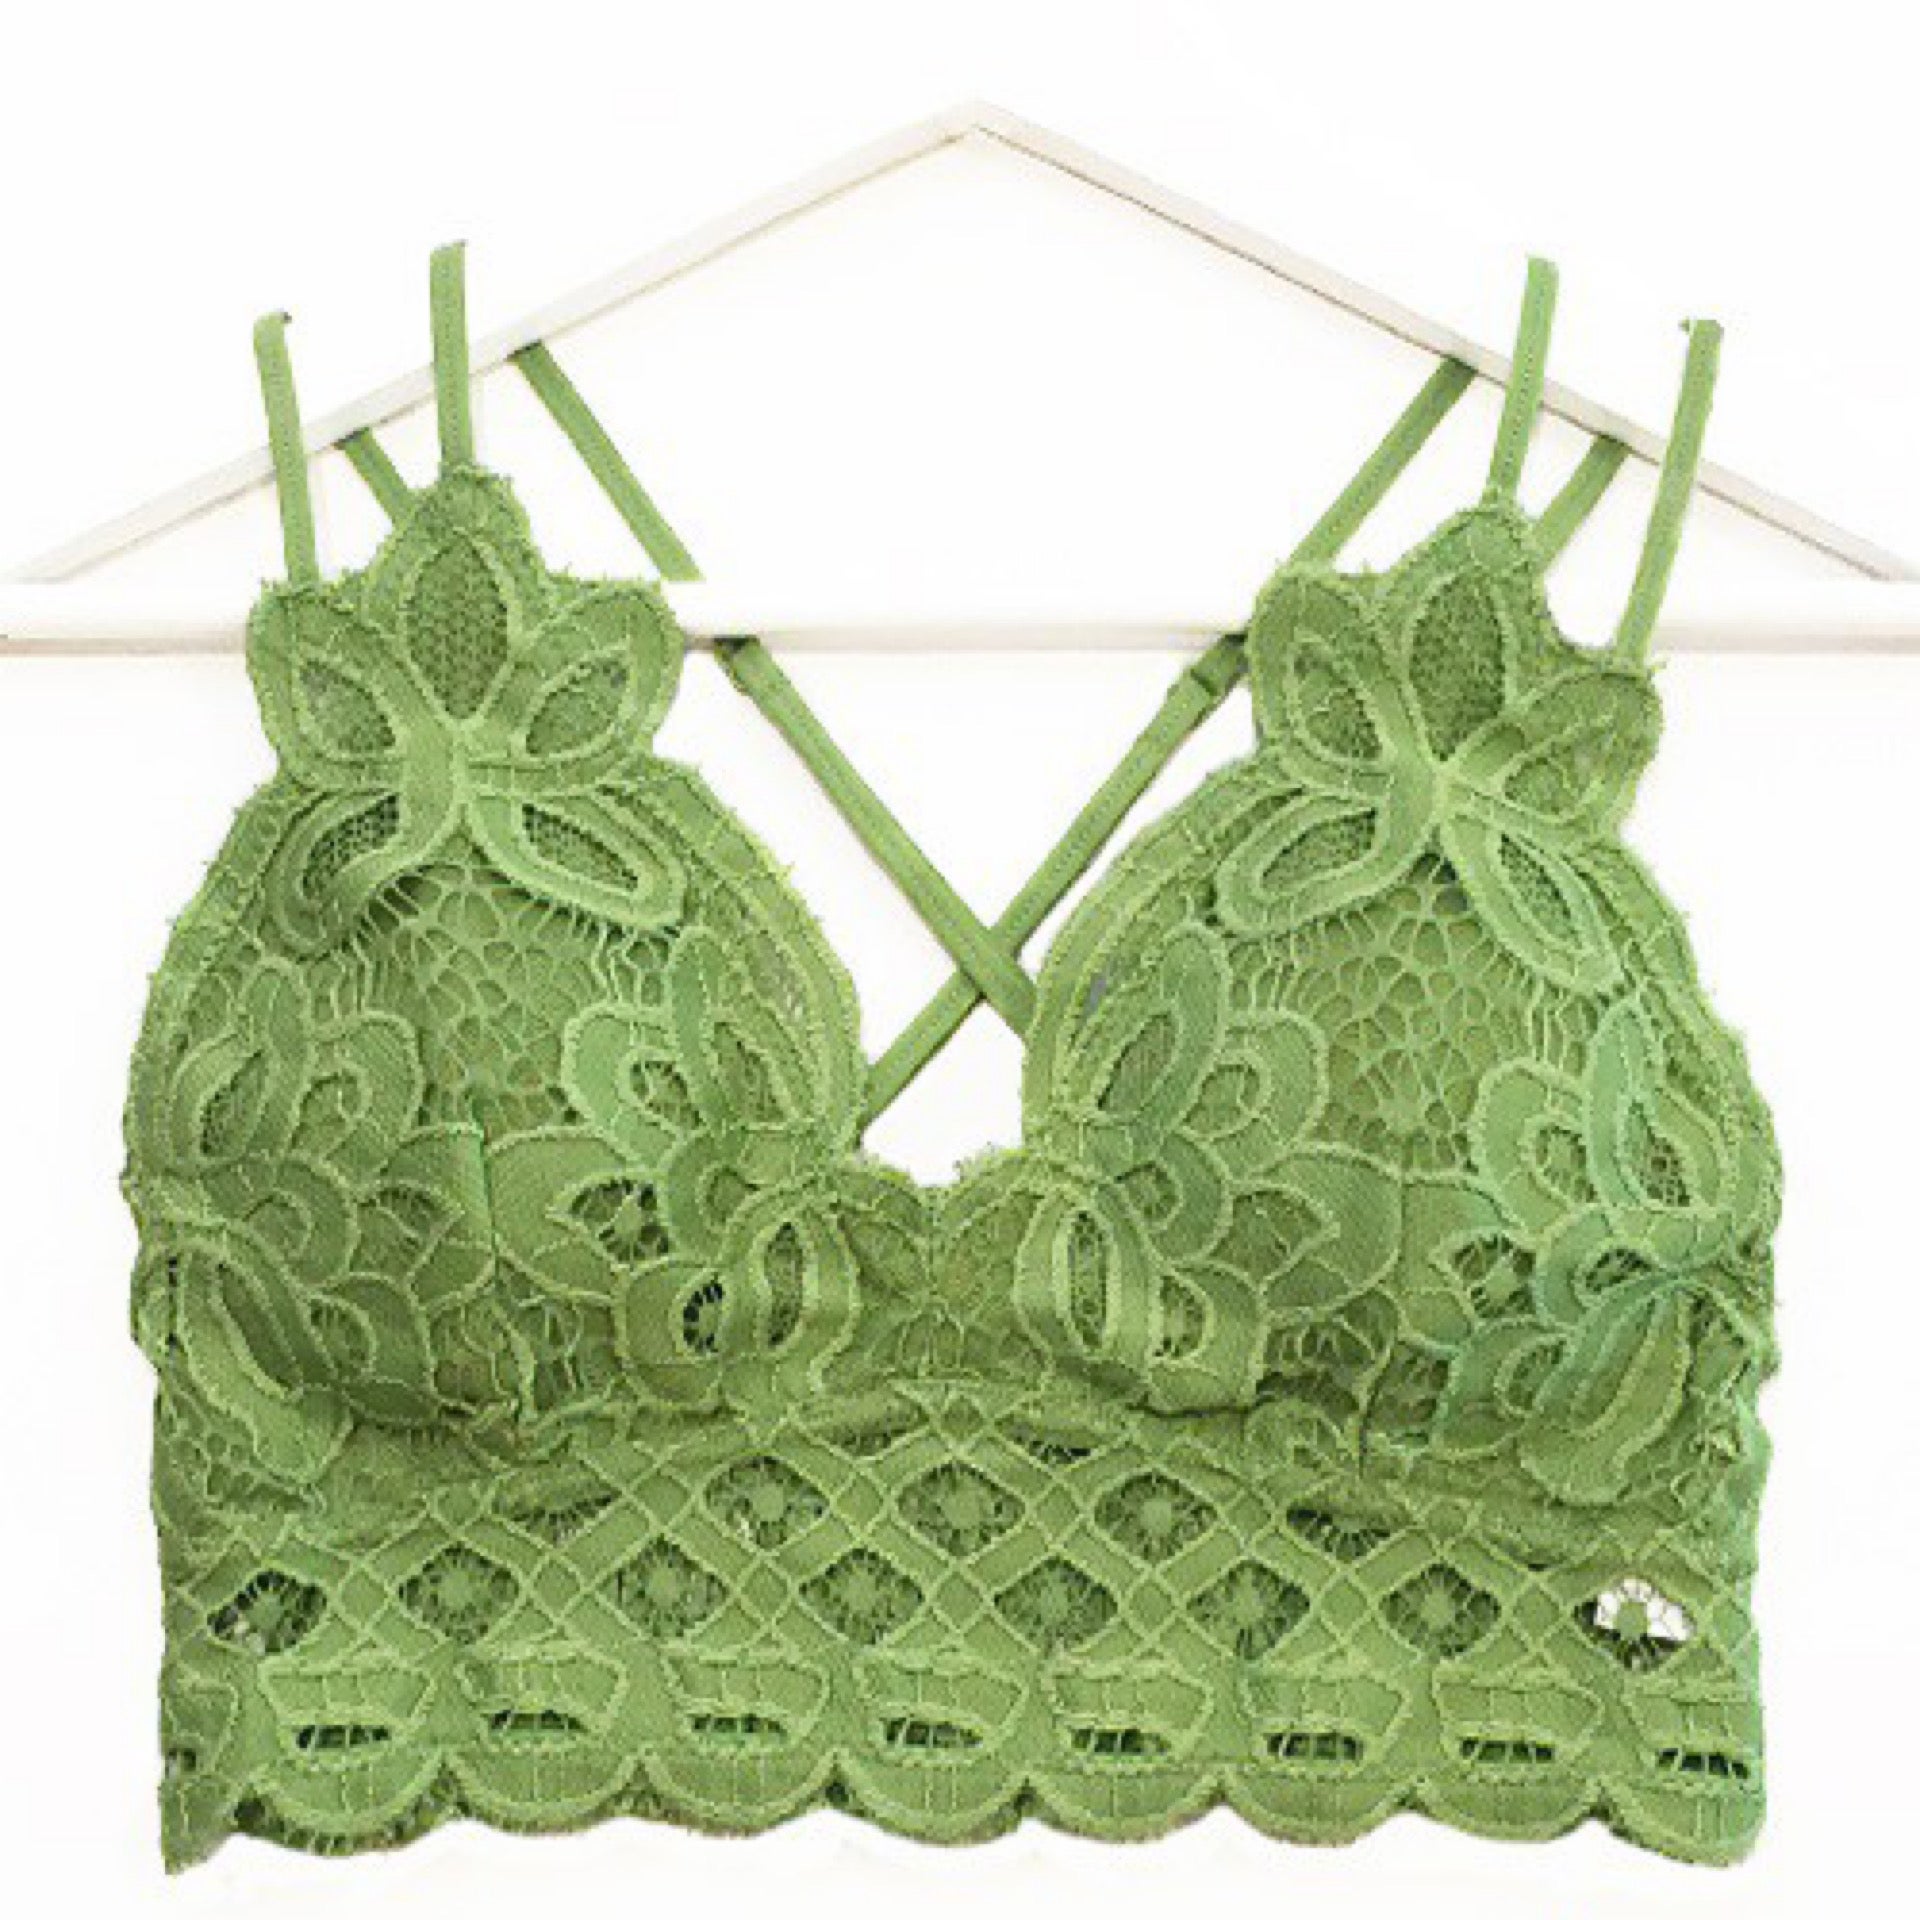 The Flower Lace Bralette Crochet PATTERN | CozyCreativeCrochets